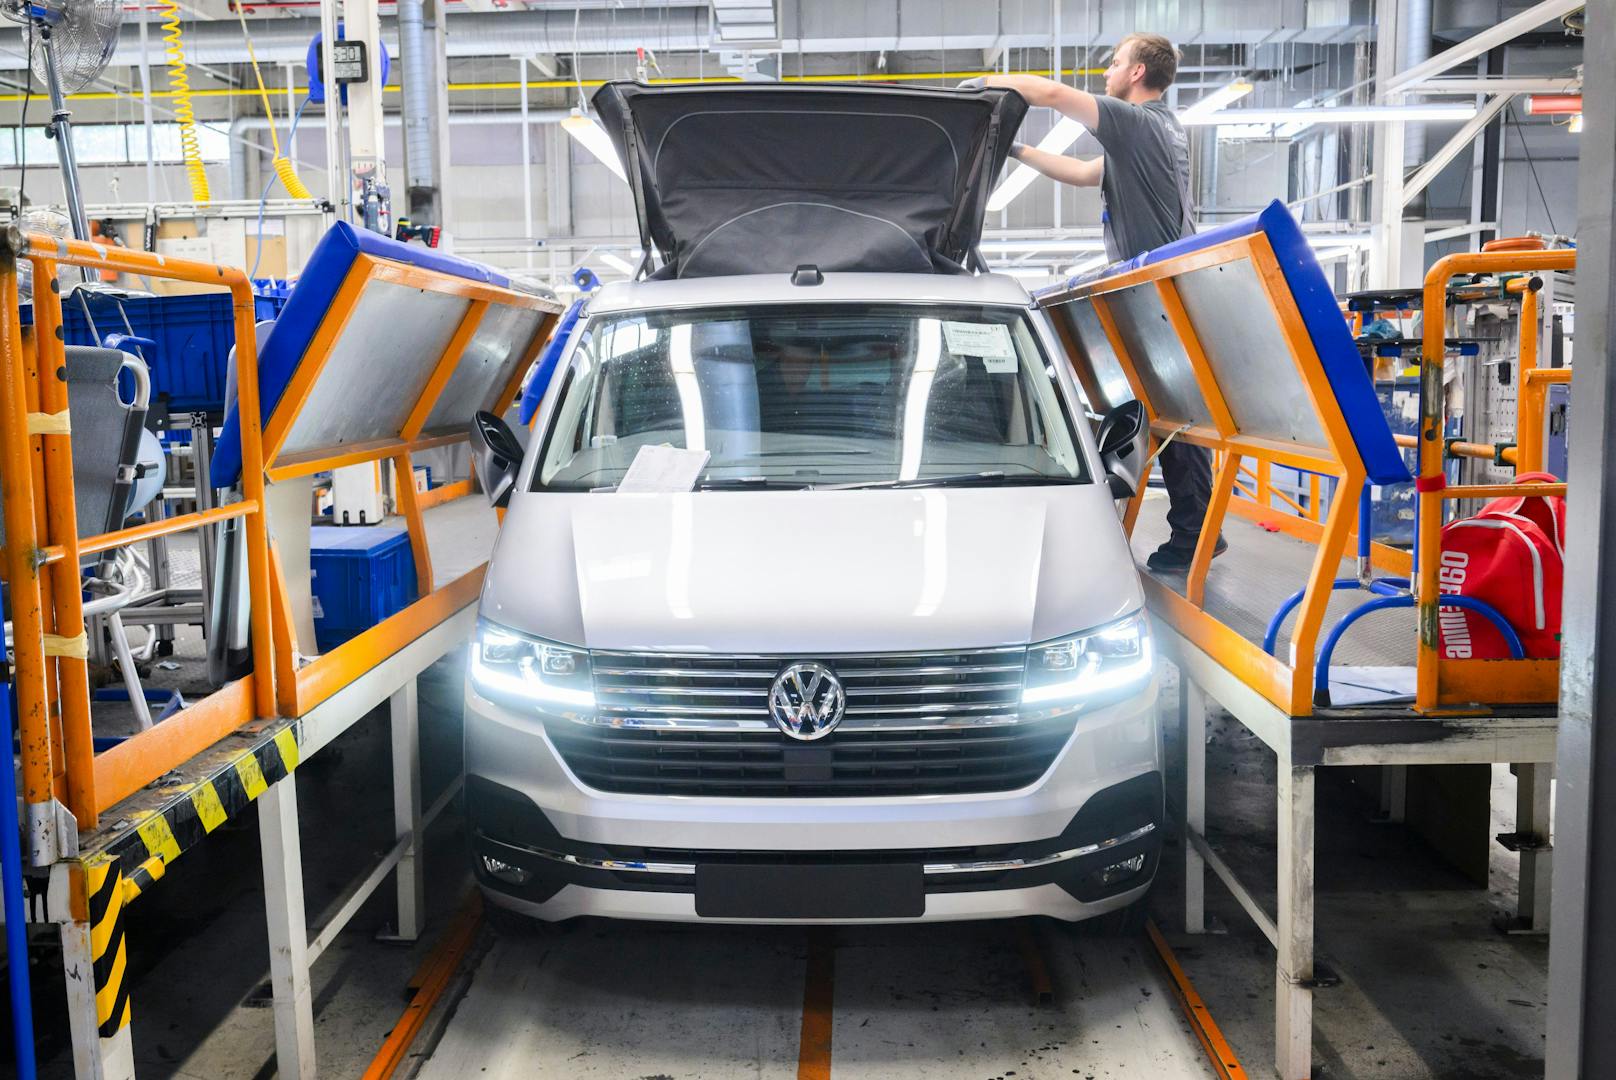 IT-Fehler legte VW lahm – Produktion läuft wieder an